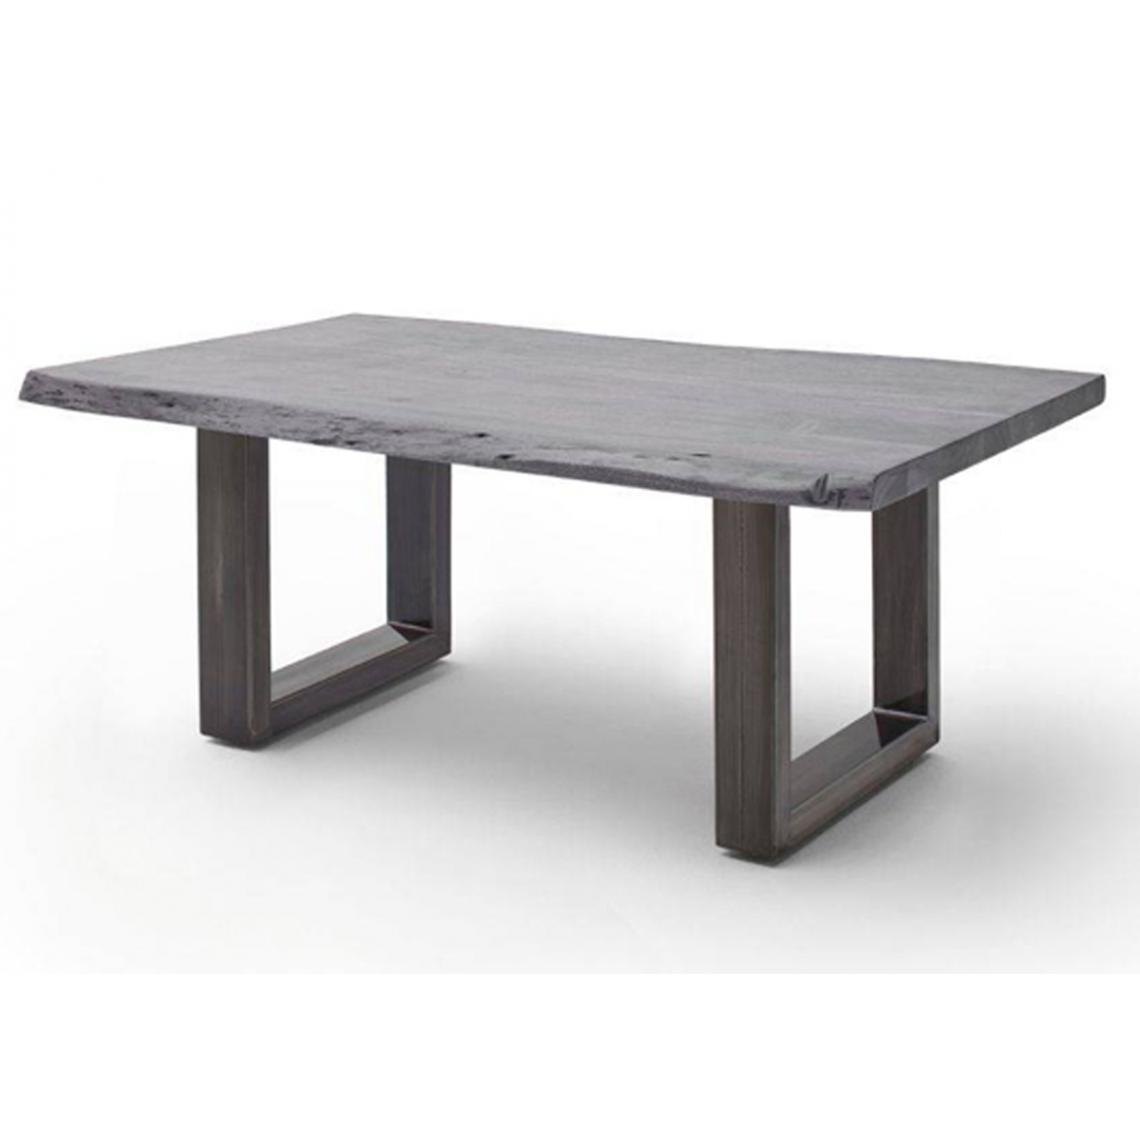 Pegane - Table basse simple en bois d'acacia massif laqué gris/antique - L.110 x H.45 x P.70 cm - Tables basses